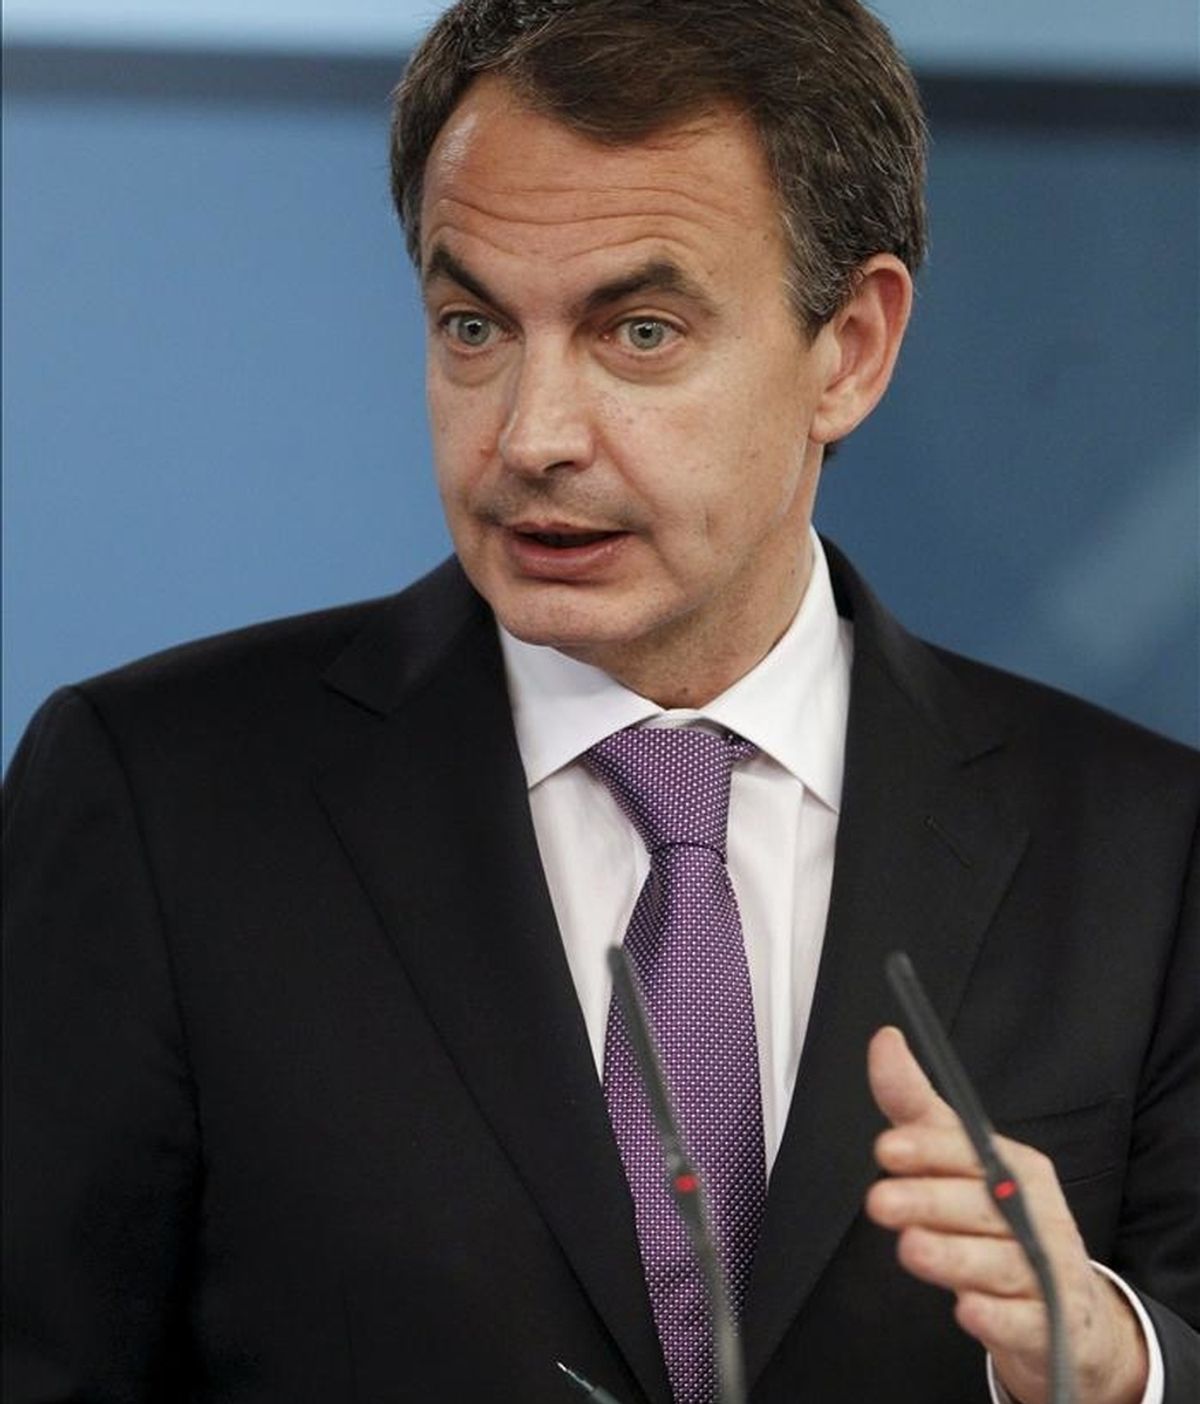 El jefe del Ejecutivo, José Luis Rodríguez Zapatero, defenderá hoy, en el Consejo europeo extraordinario que se celebrará en Bruselas, la necesidad de coordinar las políticas económicas de todos los socios comunitarios después de que cada país haya hecho las reformas necesarias para afrontar la crisis. EFE